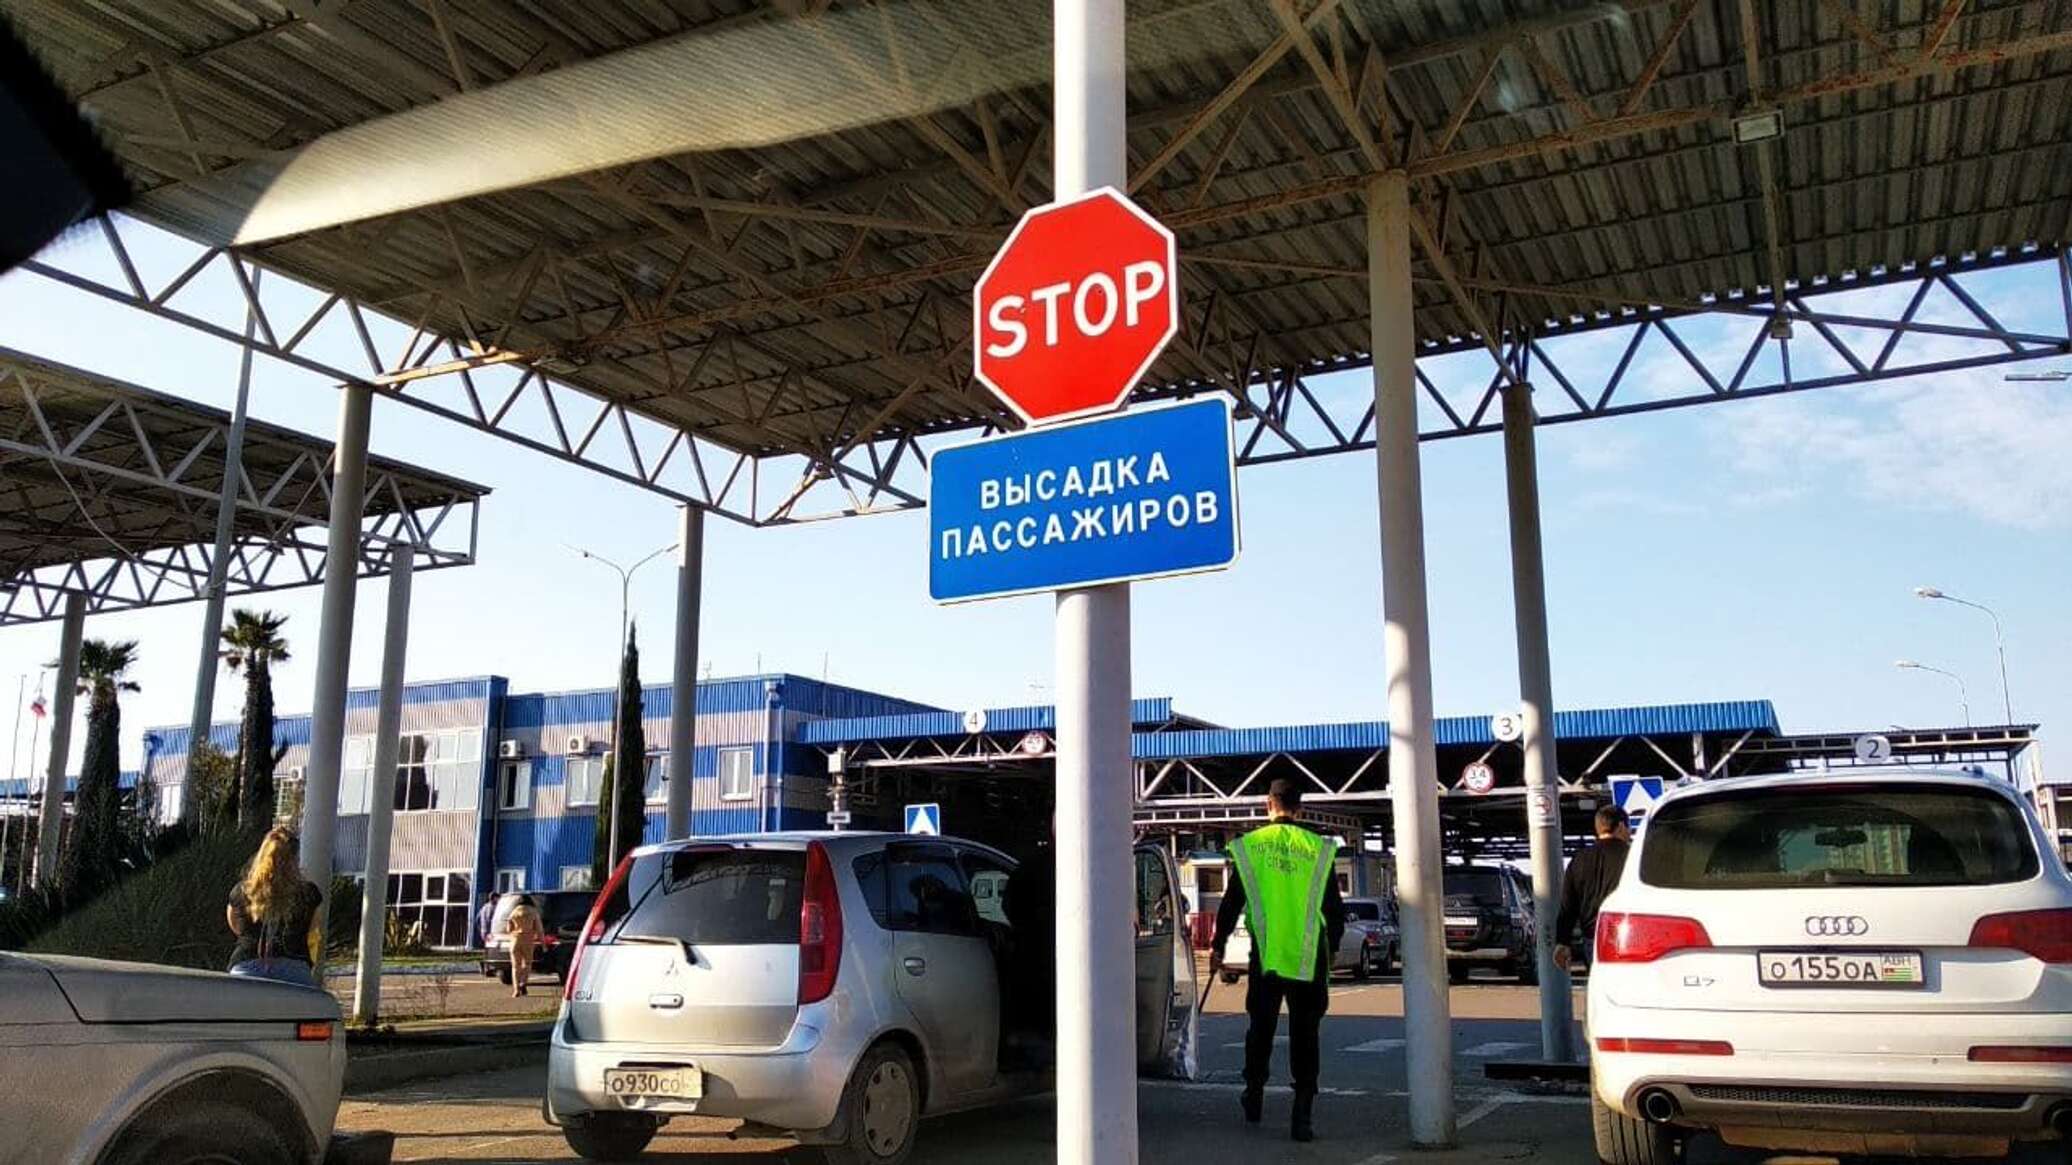 Правила въезда в Абхазию на своей машине